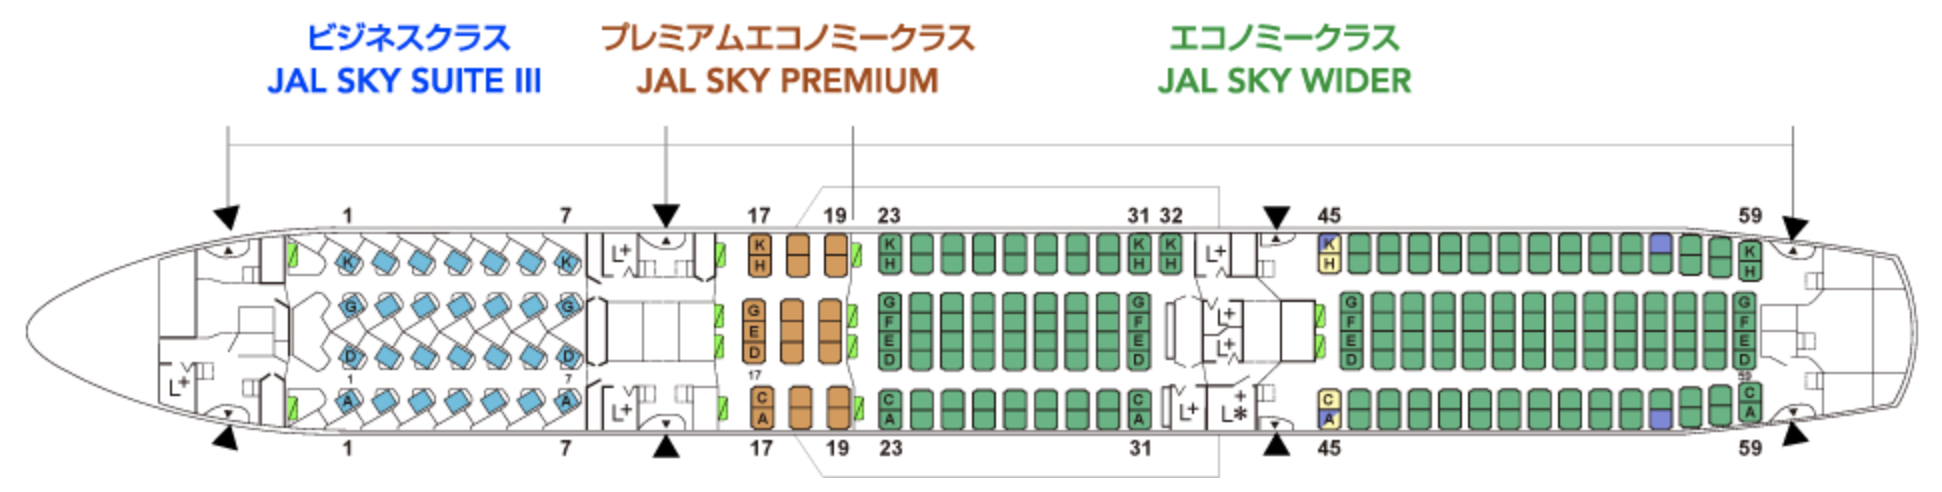 完全網羅 日本航空 Jal グループシートマップ一覧 シテイリョウコウ